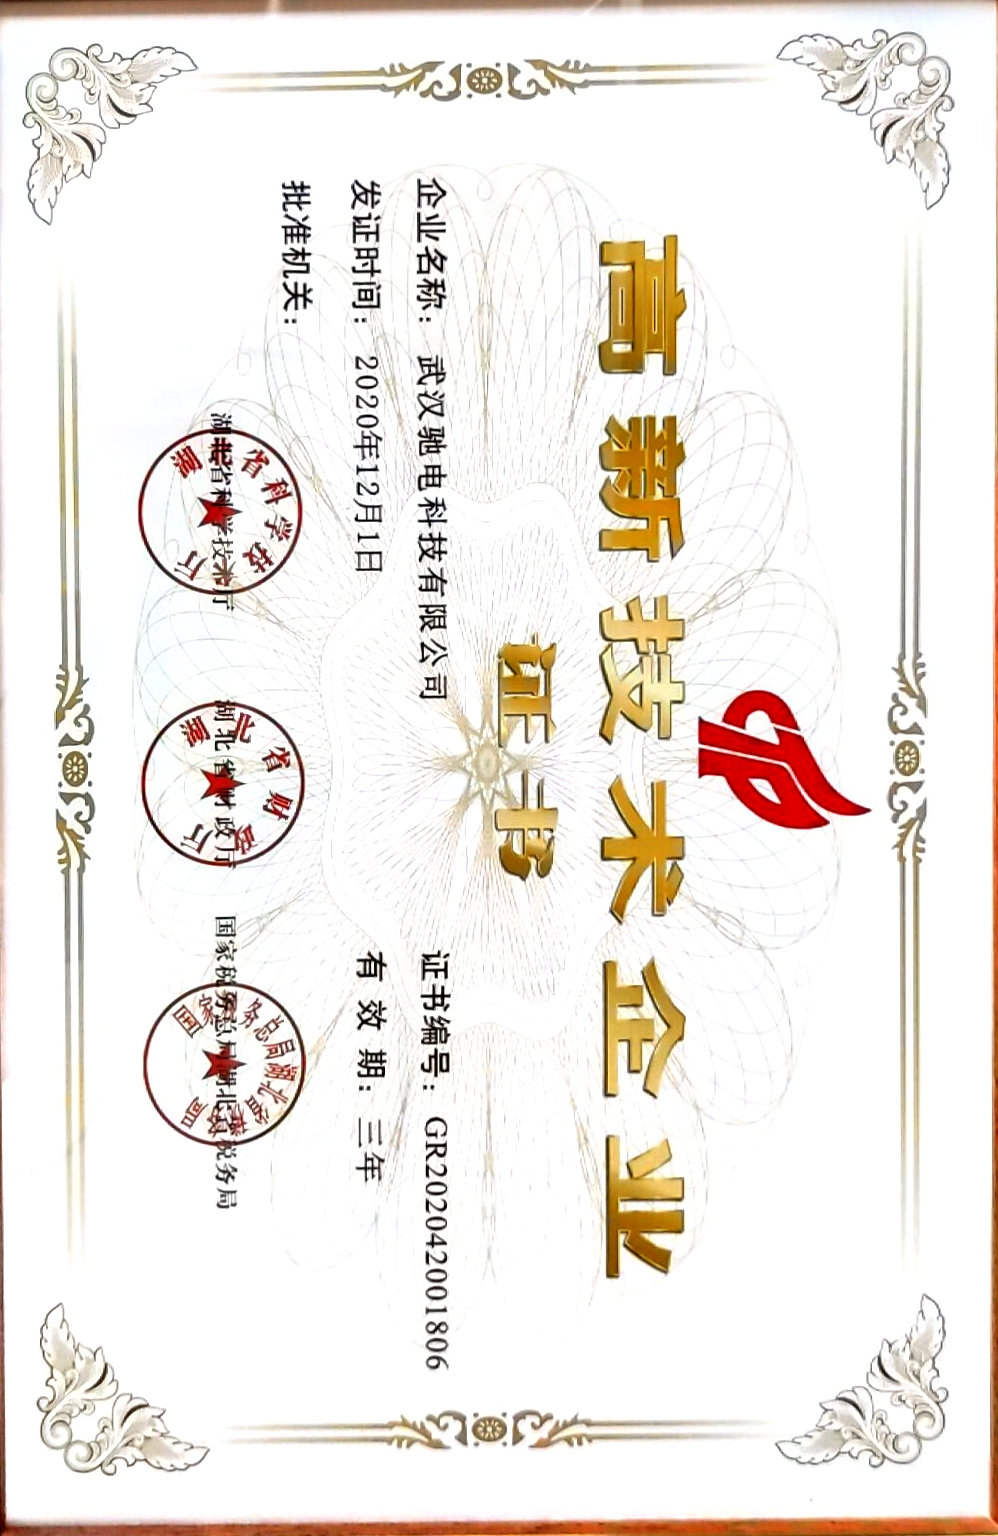 Høyteknologisk sertifikat